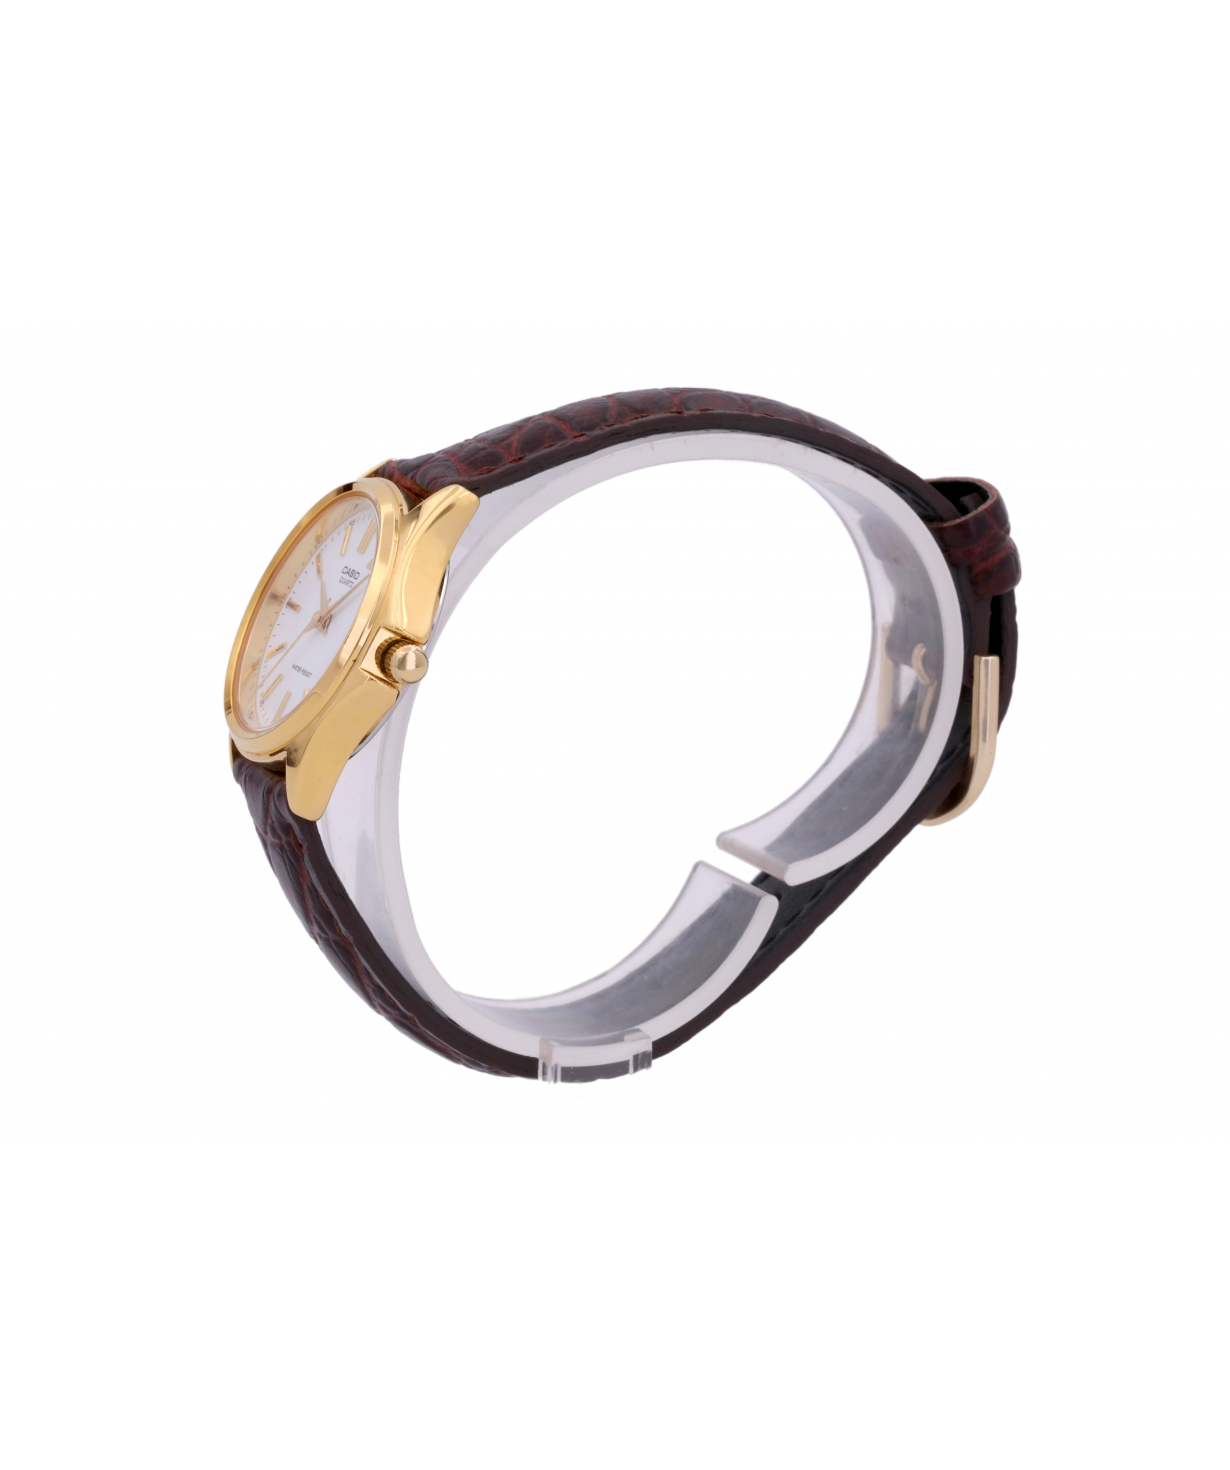 Wristwatch `Casio` LTP-1183Q-7ADF